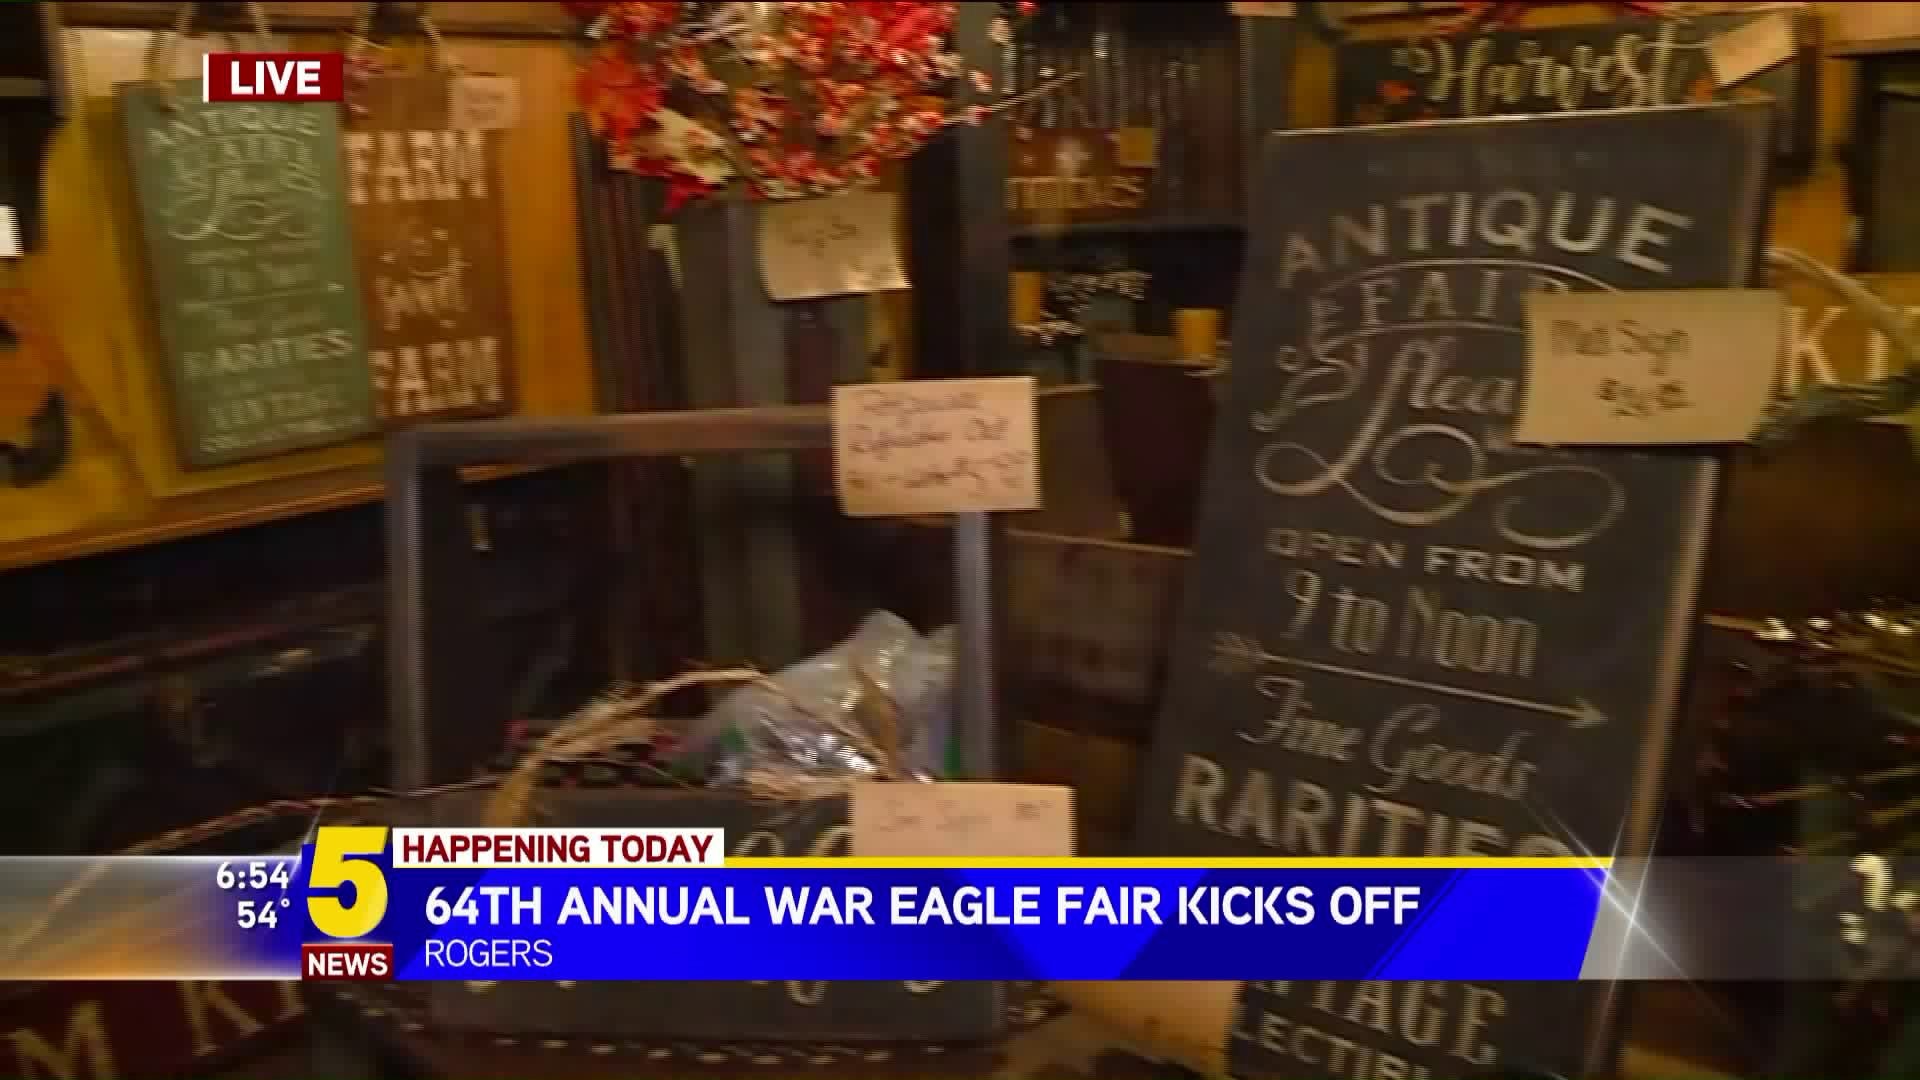 War Eagle Fair